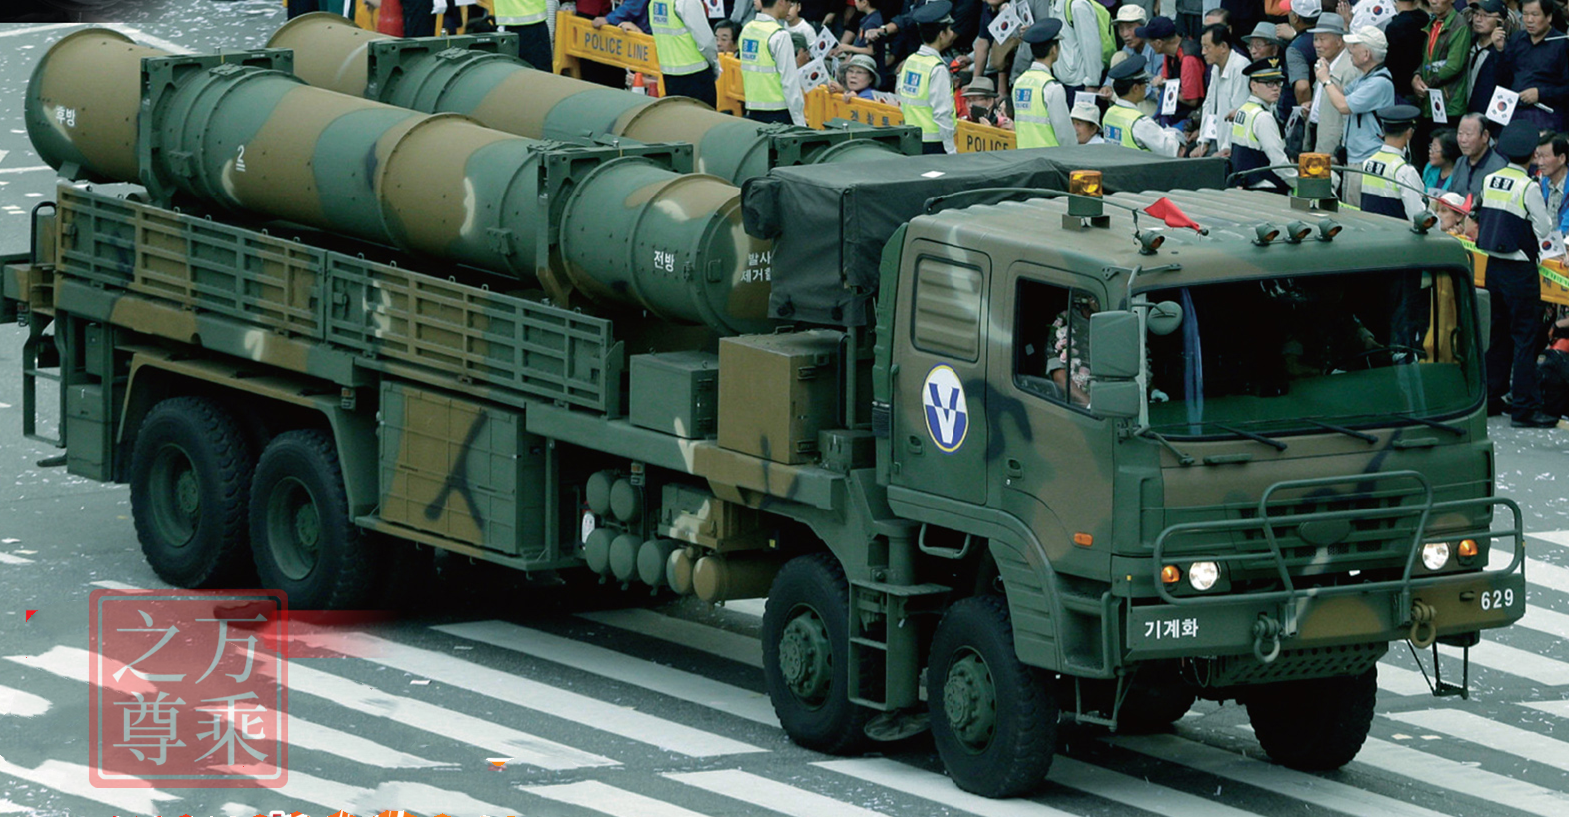 精确计算，中国需要多少反导武器才能拦得美国所有核导弹